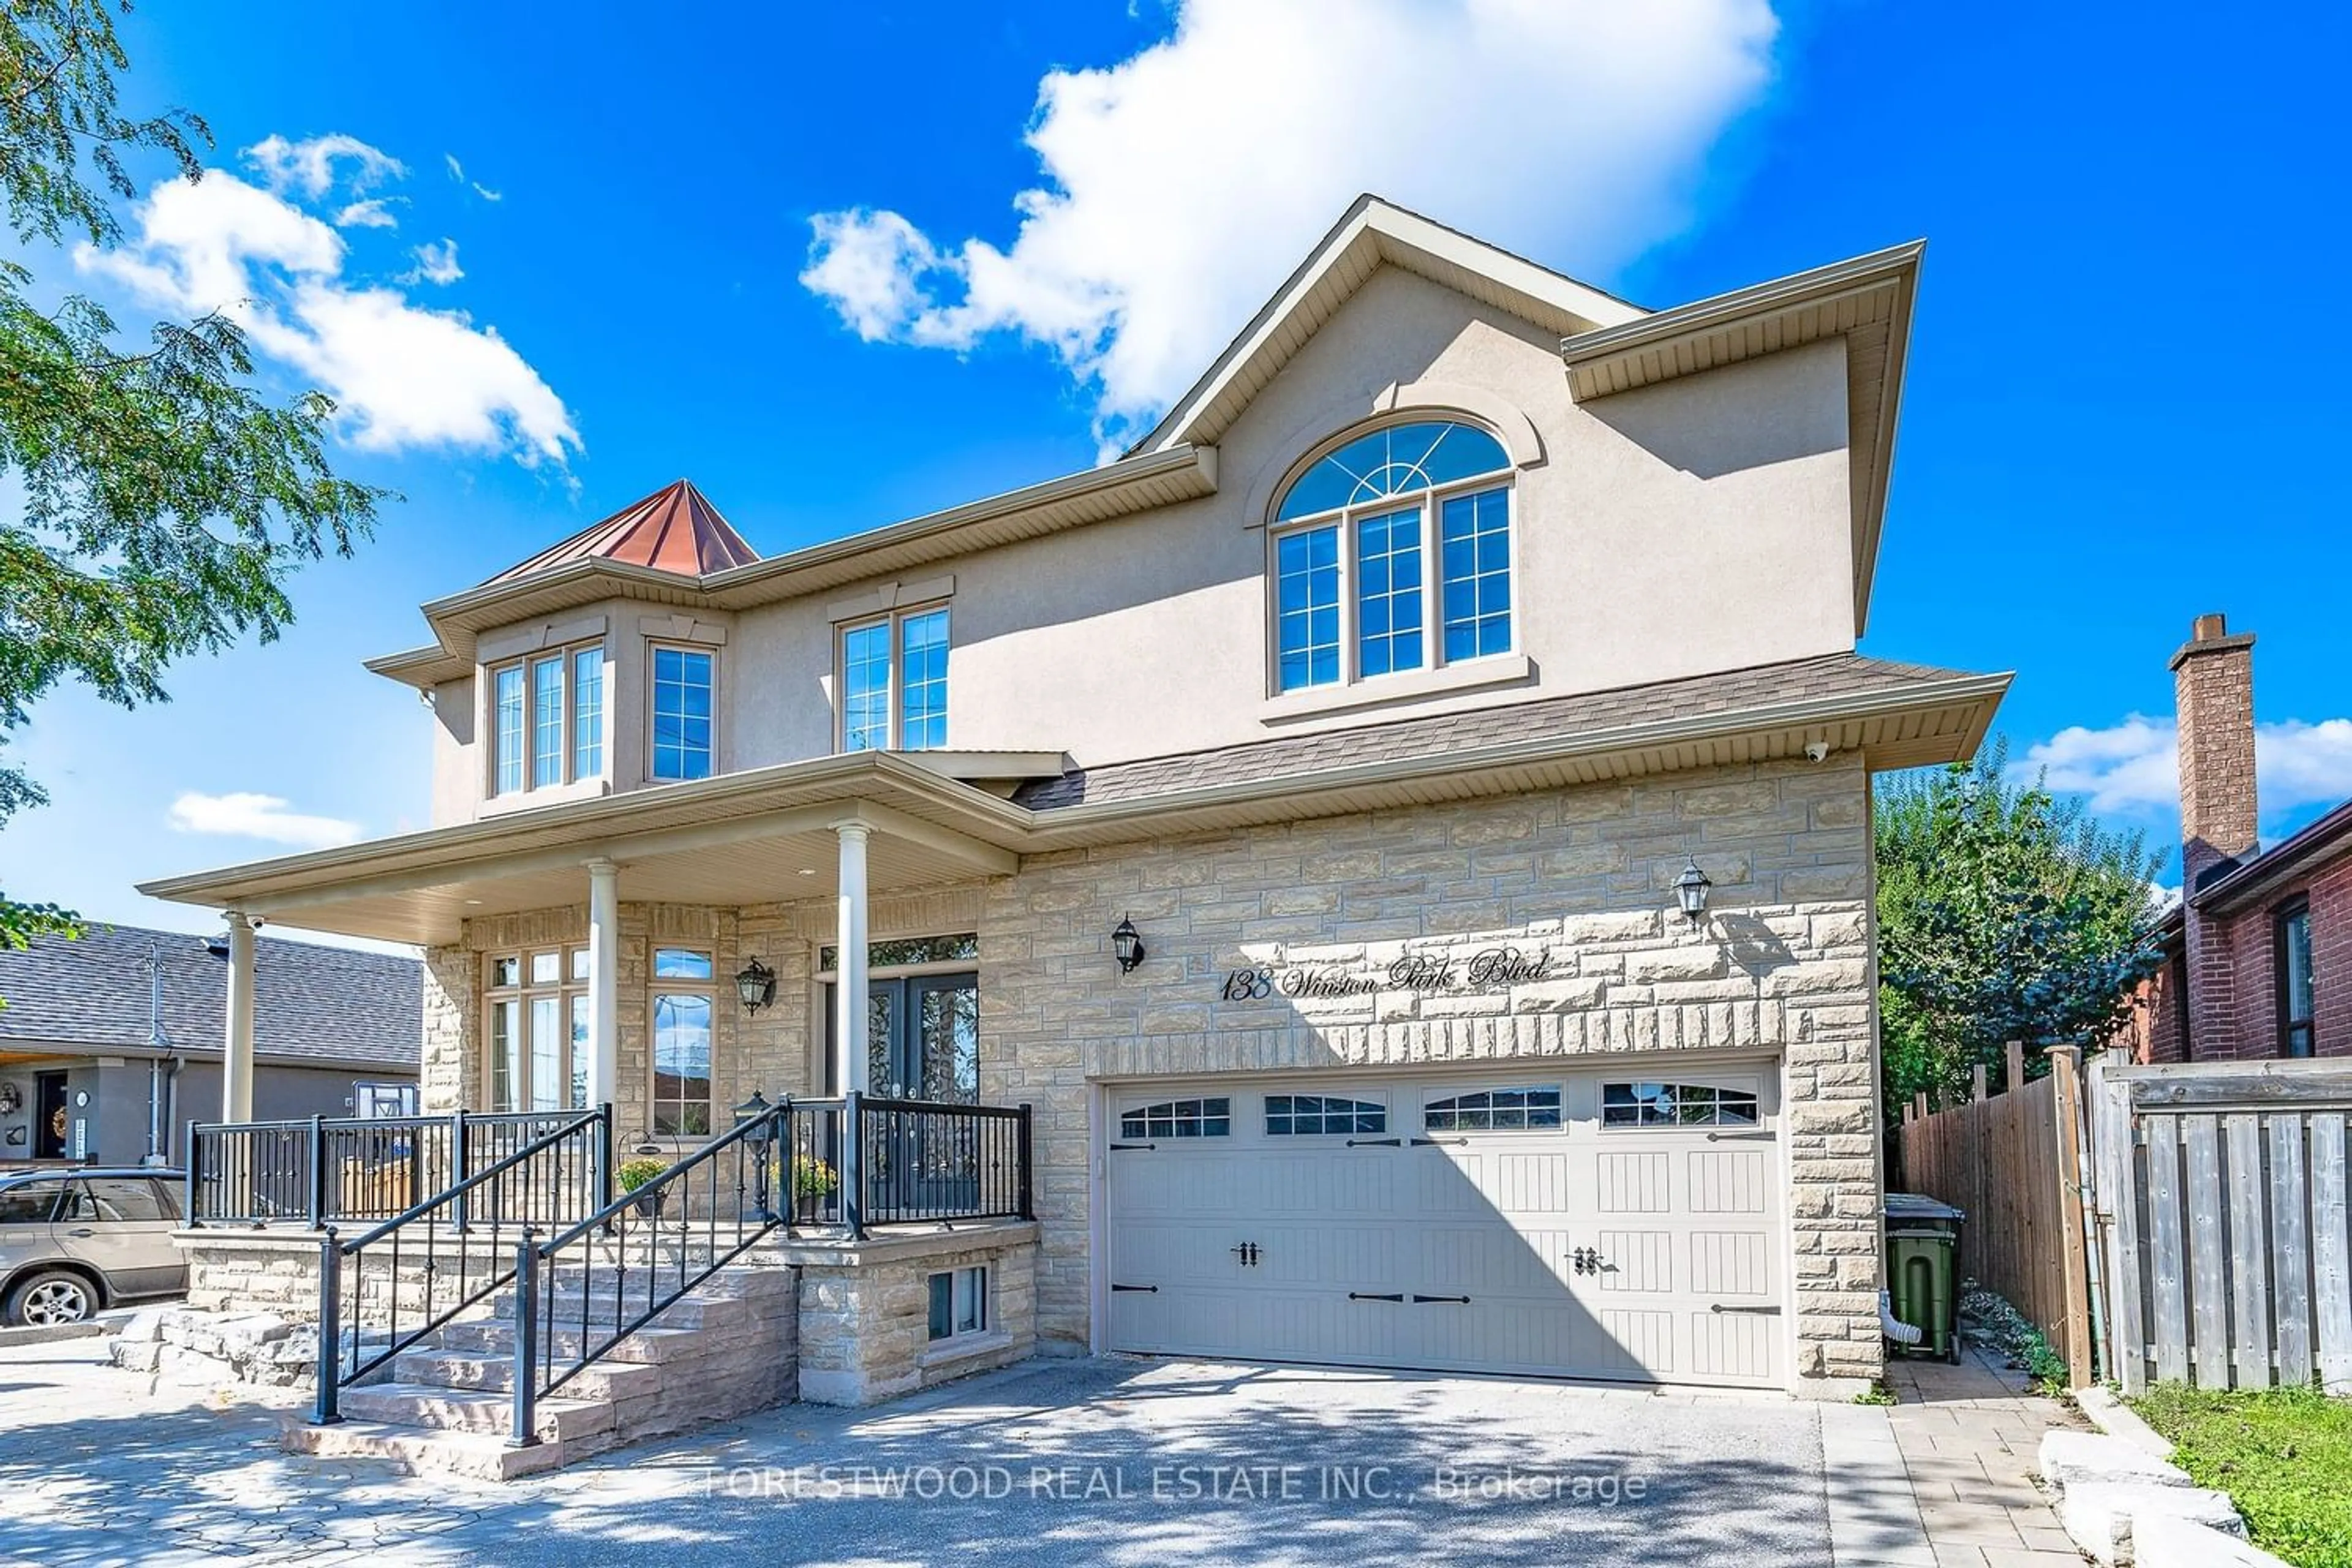 Home with stucco exterior material for 138 Winston Park Blvd, Toronto Ontario M3K 1C5